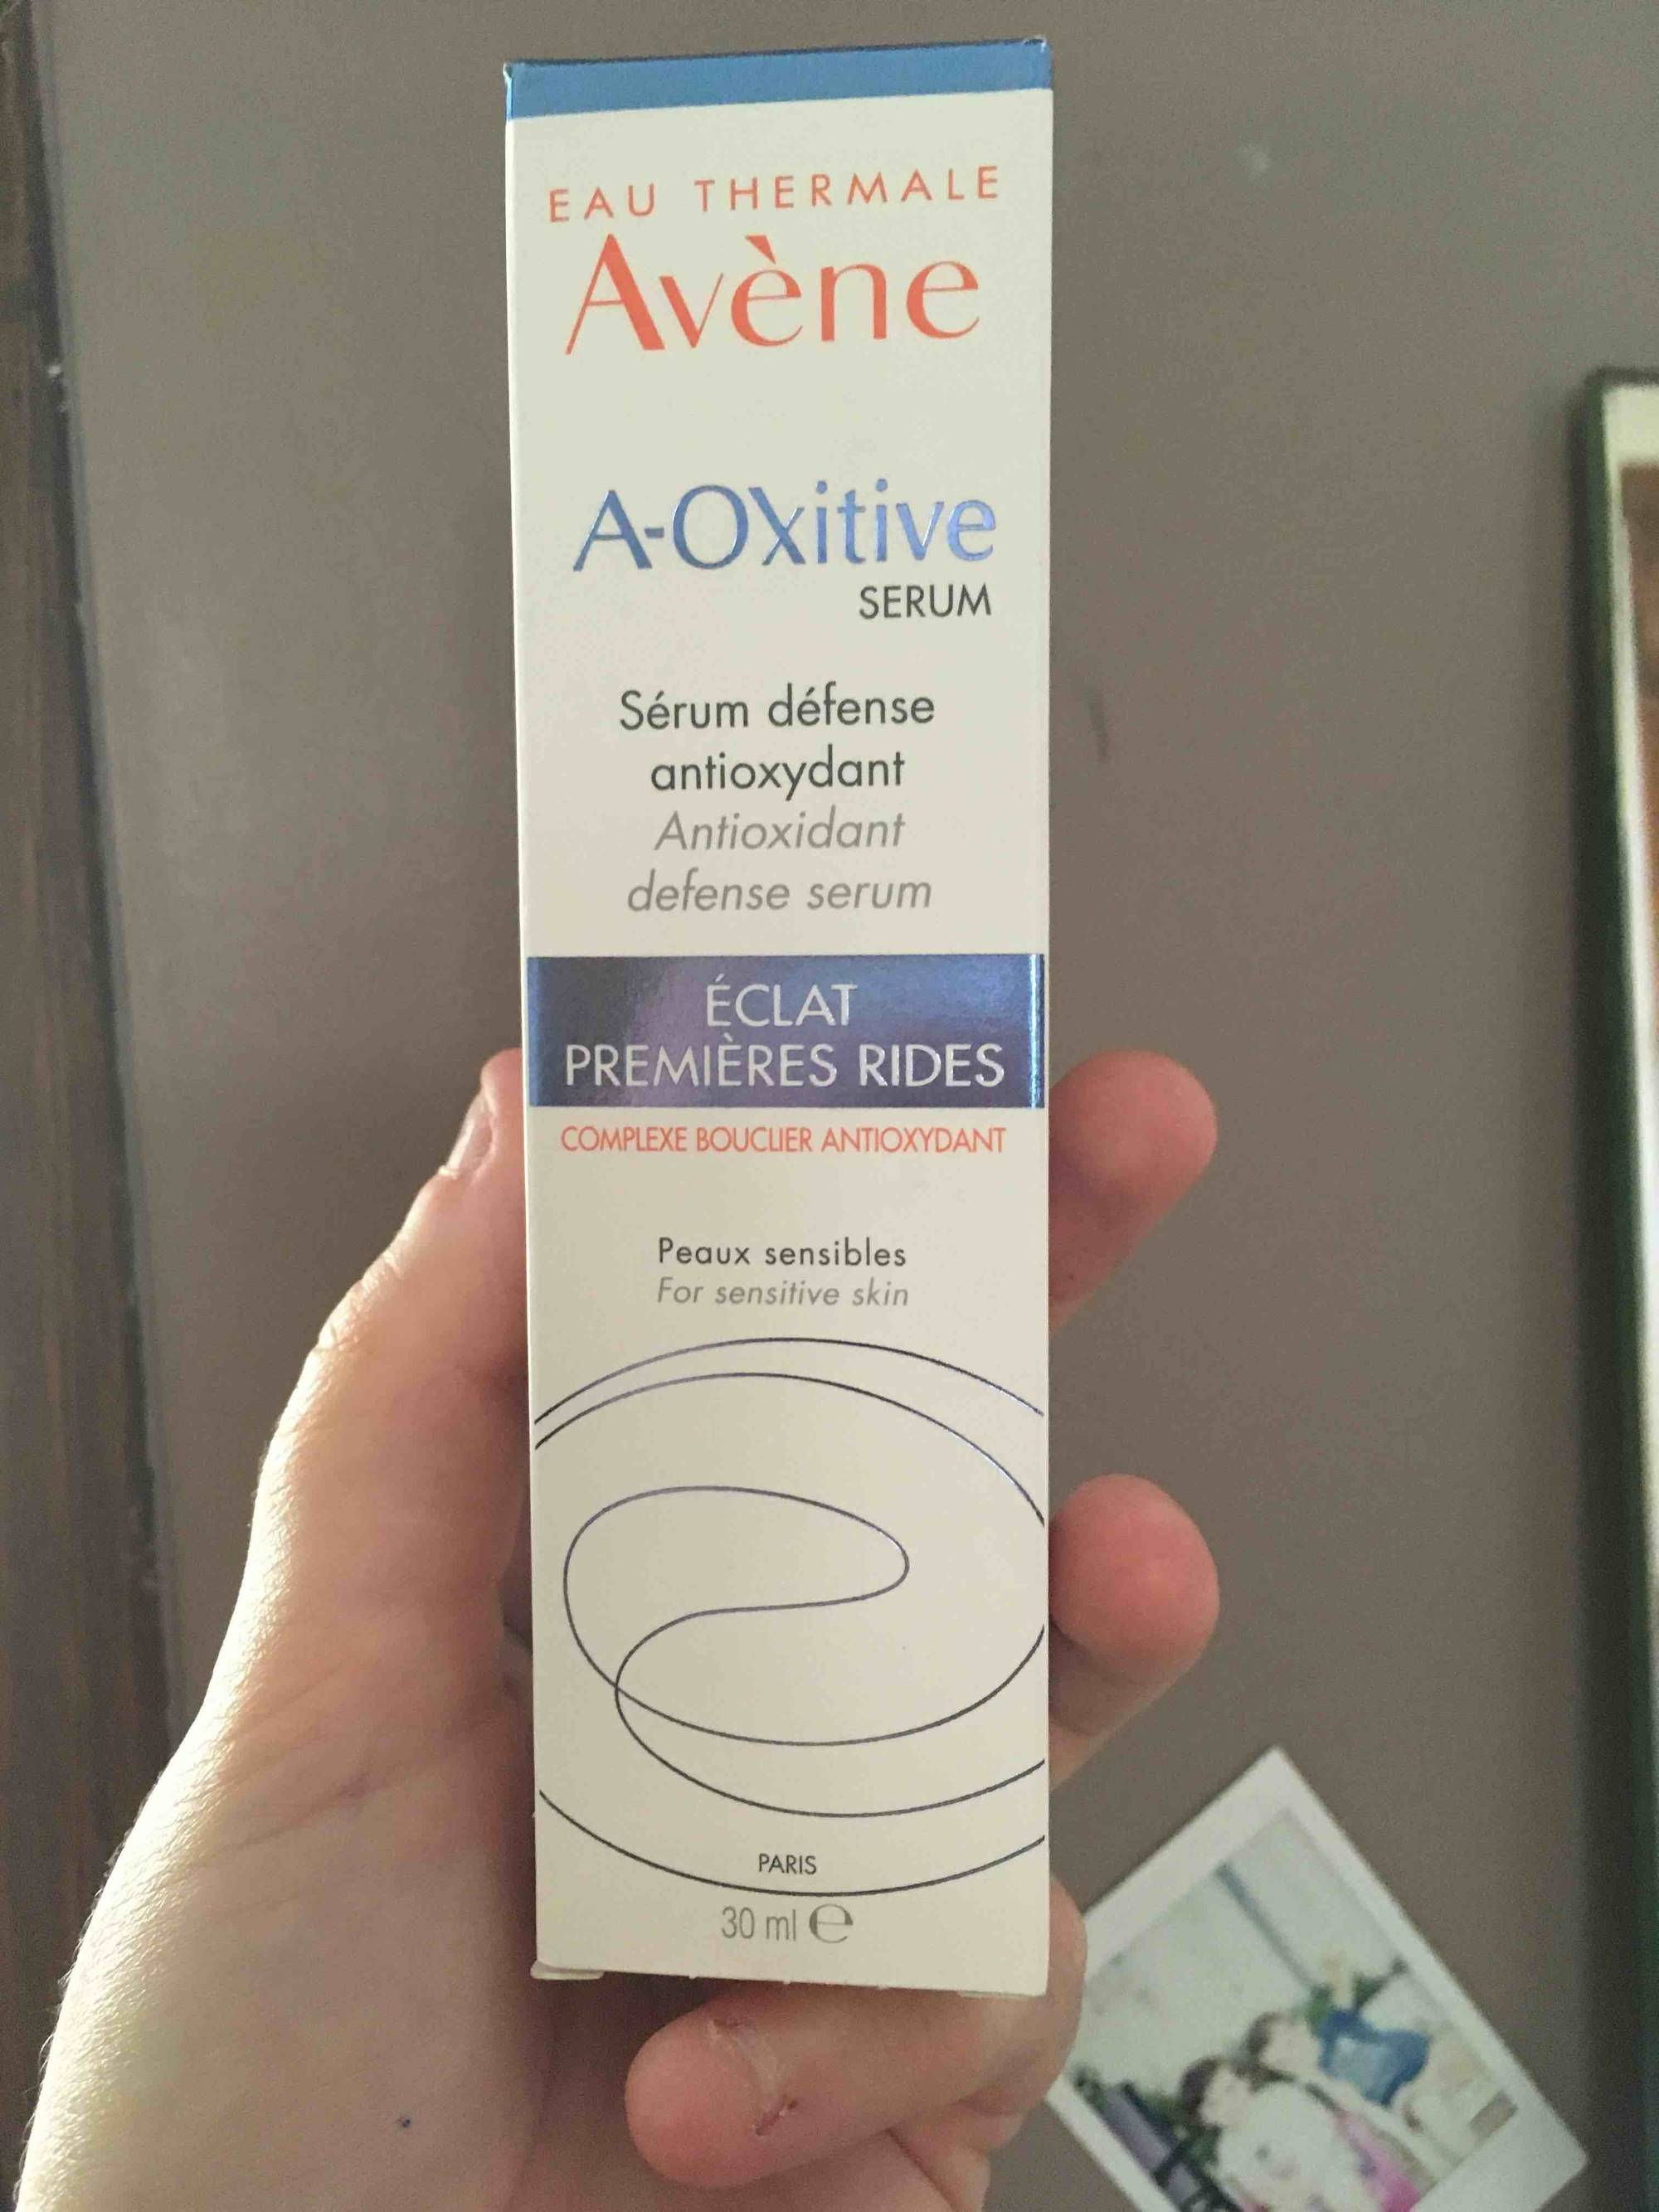 AVÈNE - A-Oxitive serum - Eclat premières rides